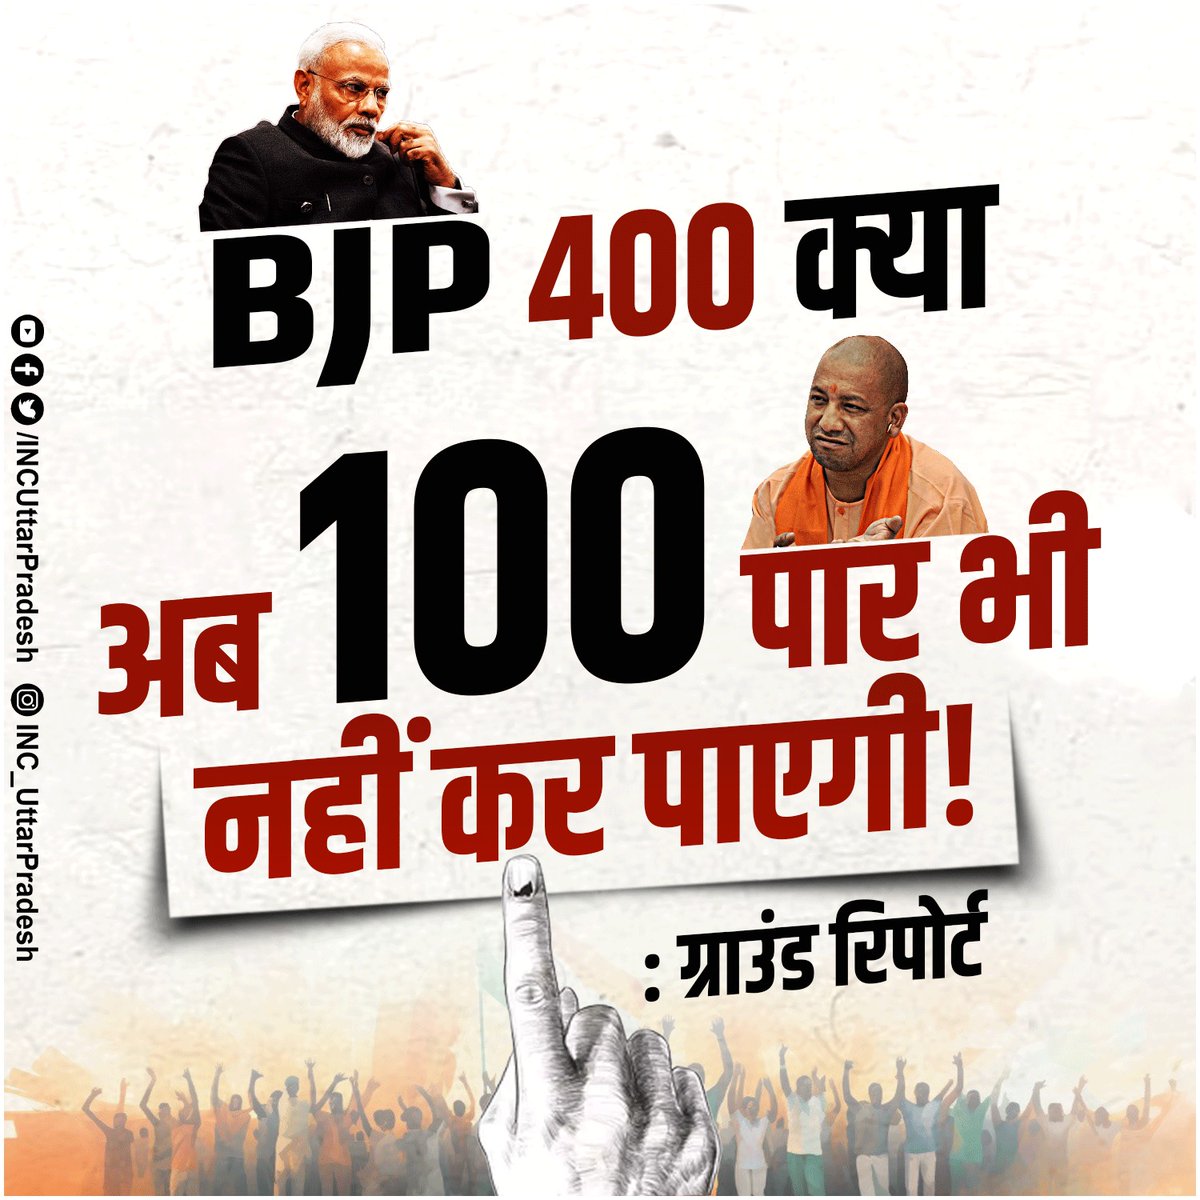 BJP 400 क्या अब 100 पार भी नहीं कर पाएगी! पहले चरण के मतदान के बाद जो ग्राउंड रिपोर्ट सामने आ रही हैं। उसमें BJP का बेहद खराब प्रदर्शन रहा है। महंगाई, बेरोजगारी से त्रस्त जनता ने बदलाव का मन बना लिया है।